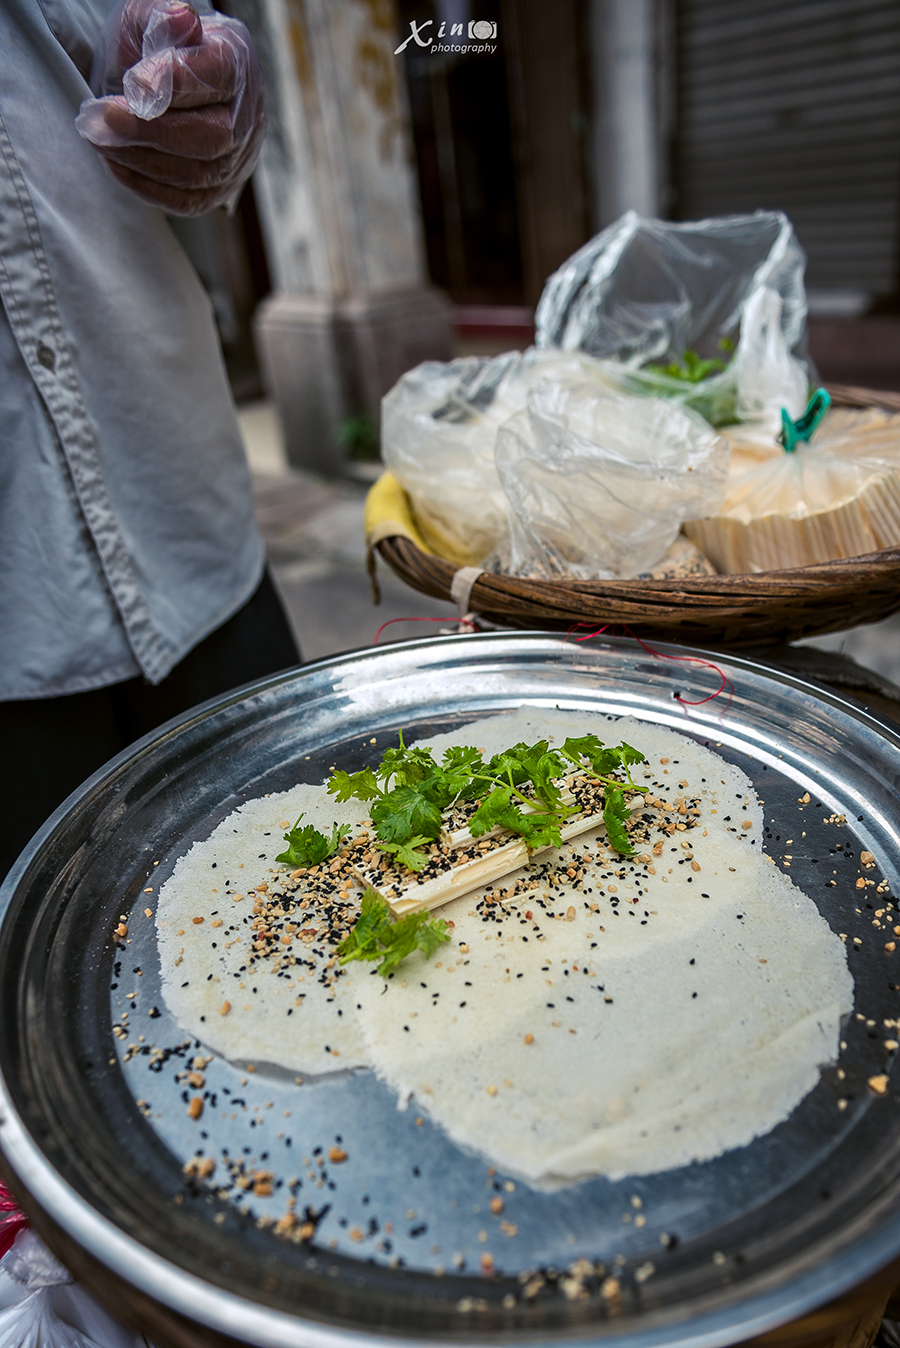 糖葱薄饼是一种广东潮汕地区广为流传的小吃.